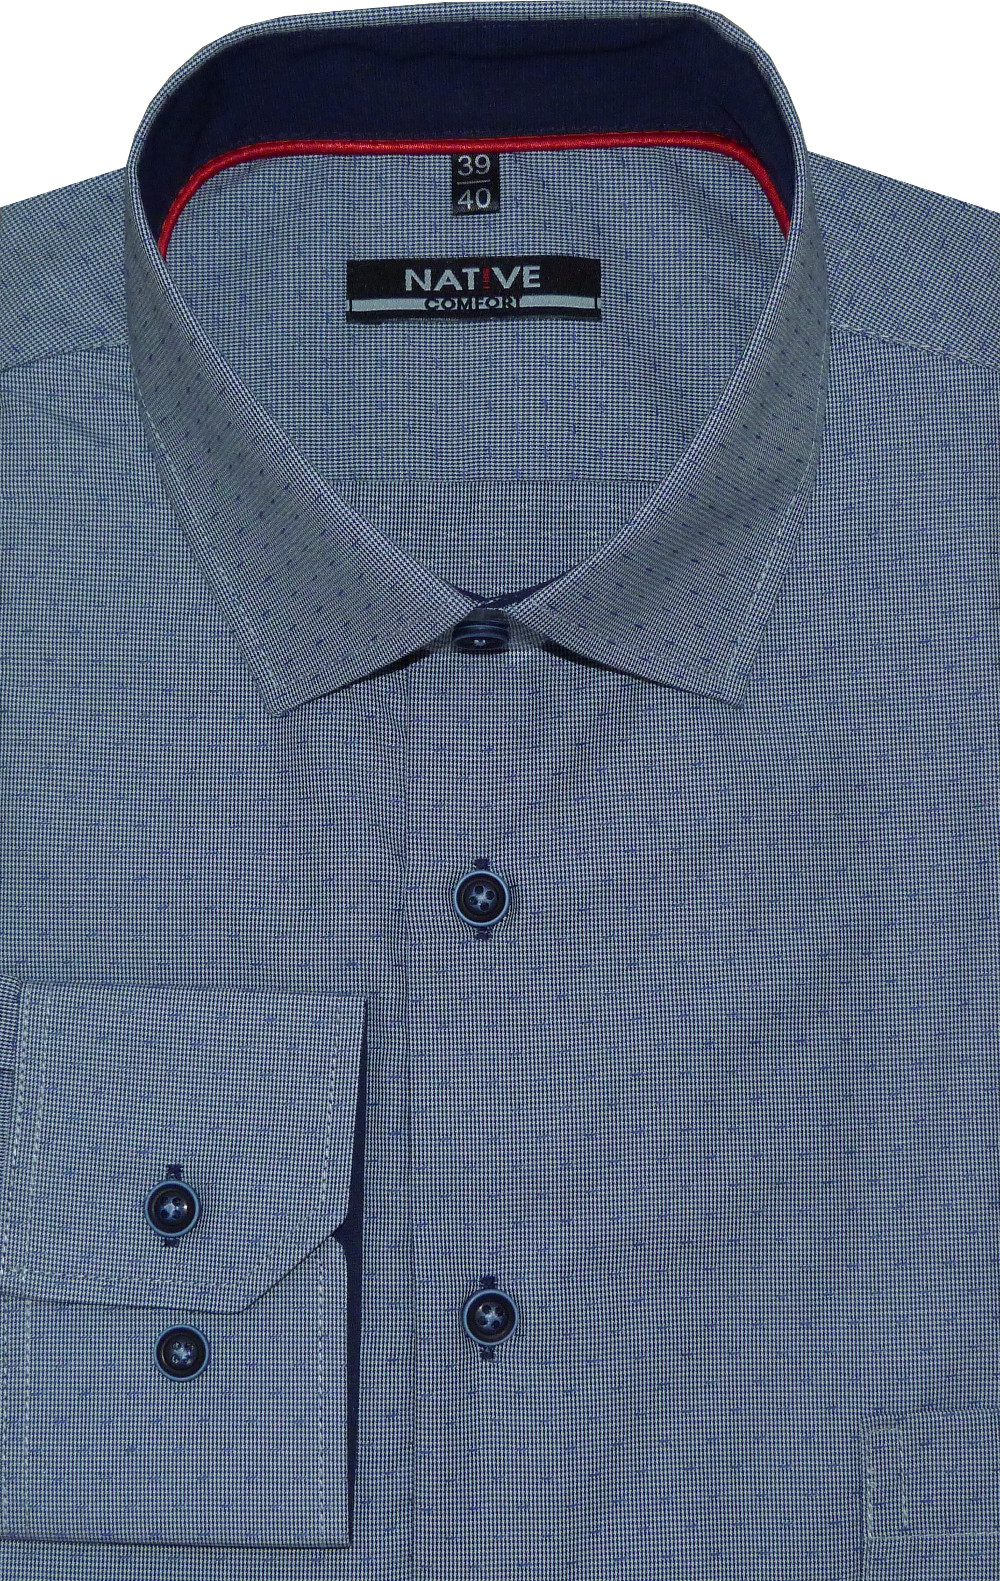 Pánská košile (modrá) Native s dlouhým rukávem, vel. 39/40 - N195/322